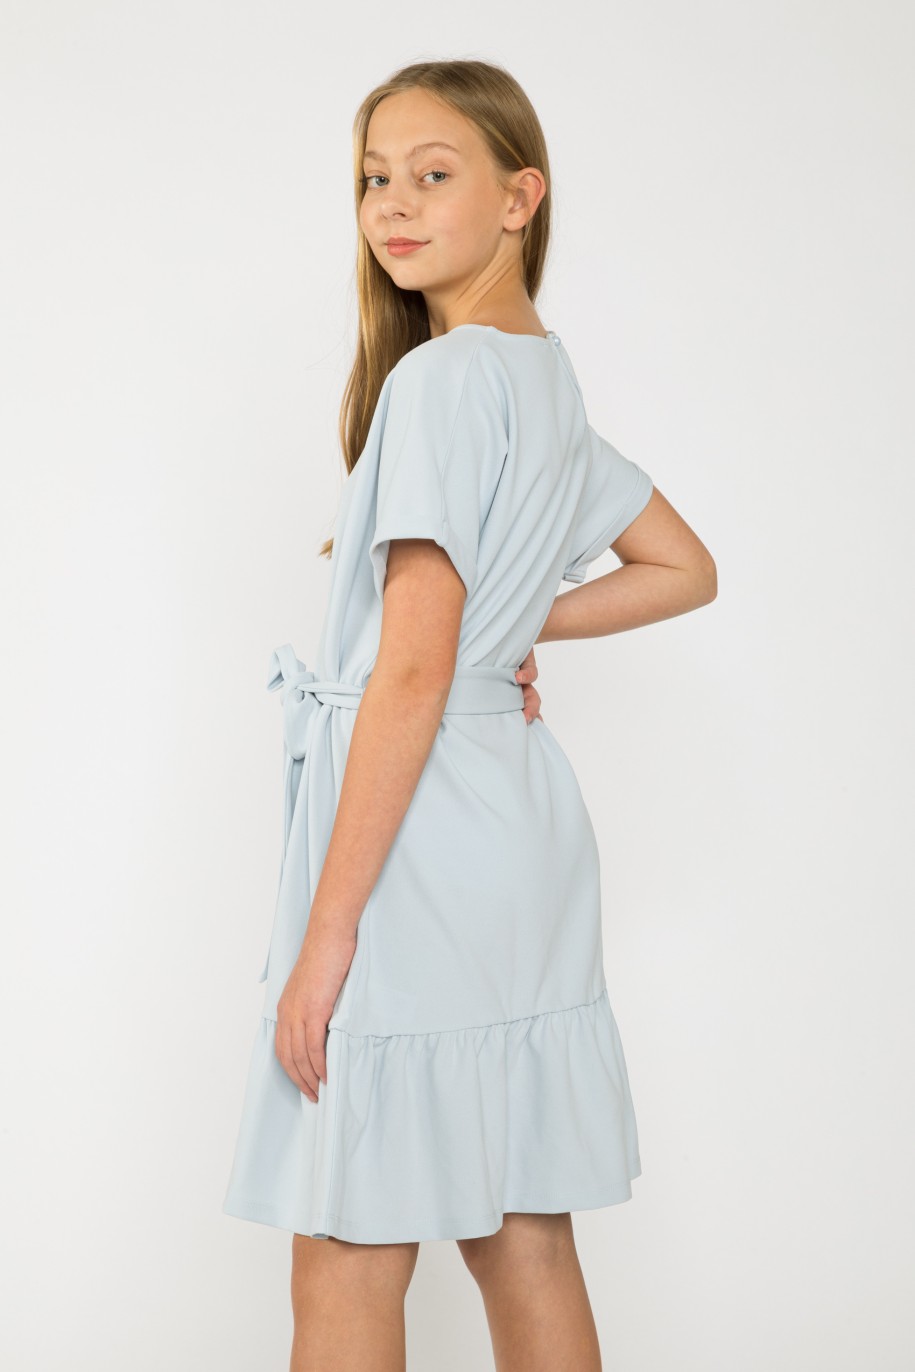 Błękitna sukienka z falbanką dla dziewczyny - 41636